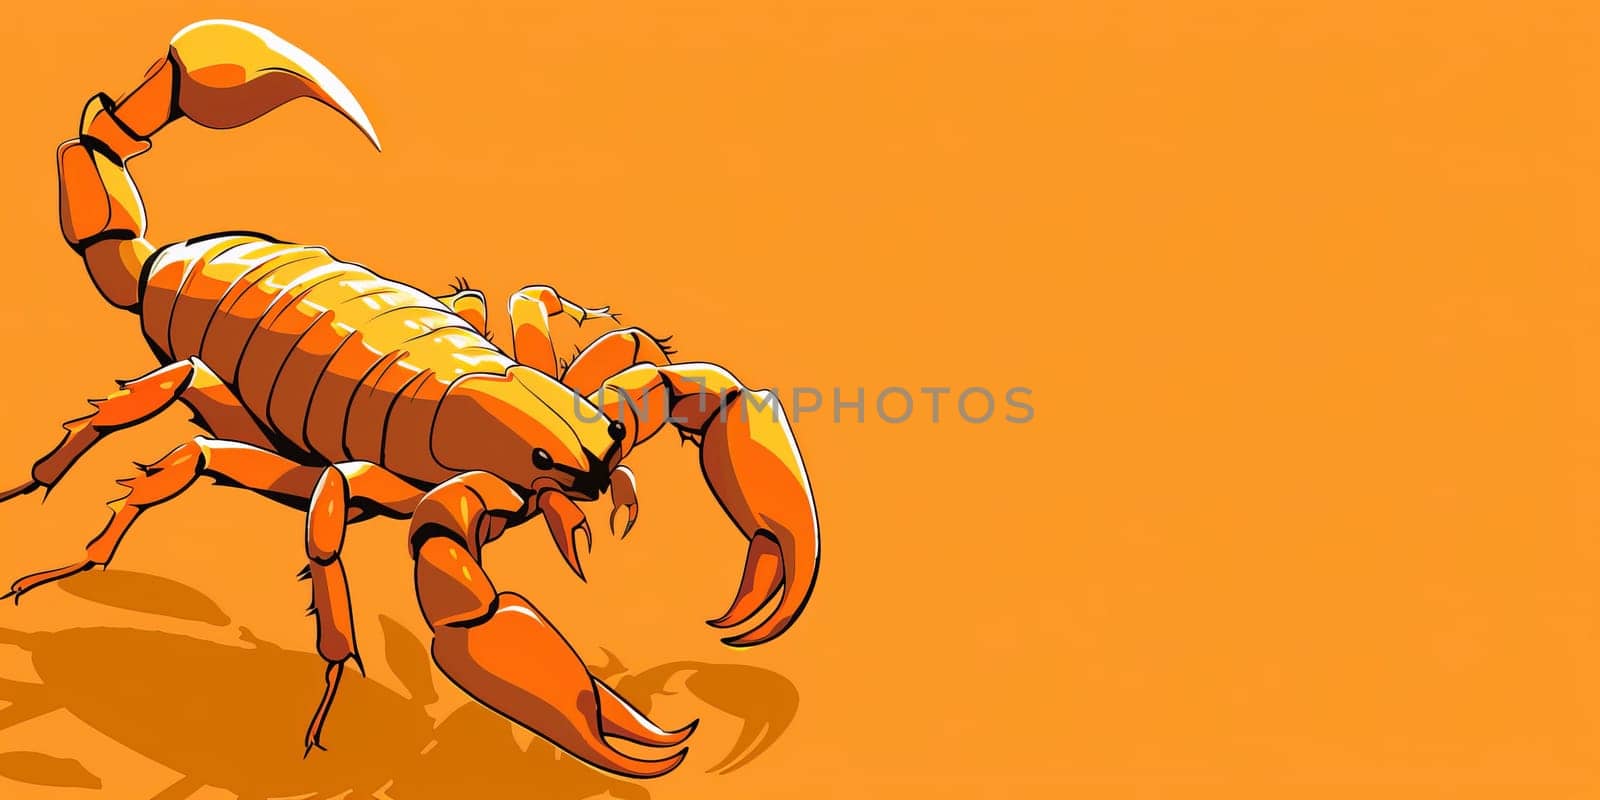 A yellow scorpion crawling on a vibrant orange backdrop by Kadula